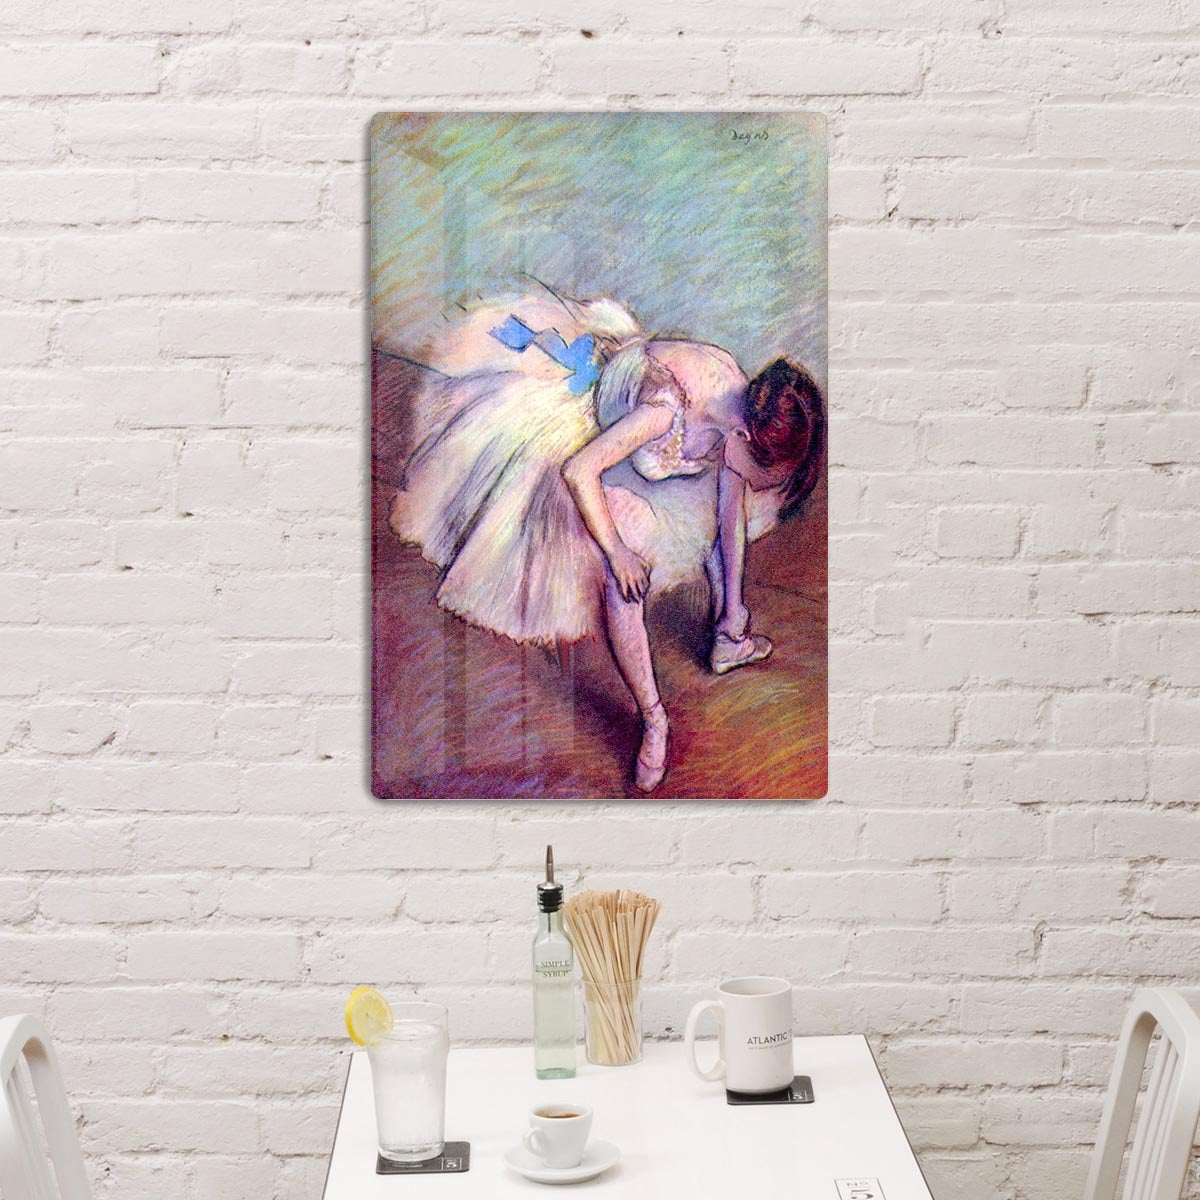 Dancer 2 by Degas HD Metal Print - Canvas Art Rocks - 3